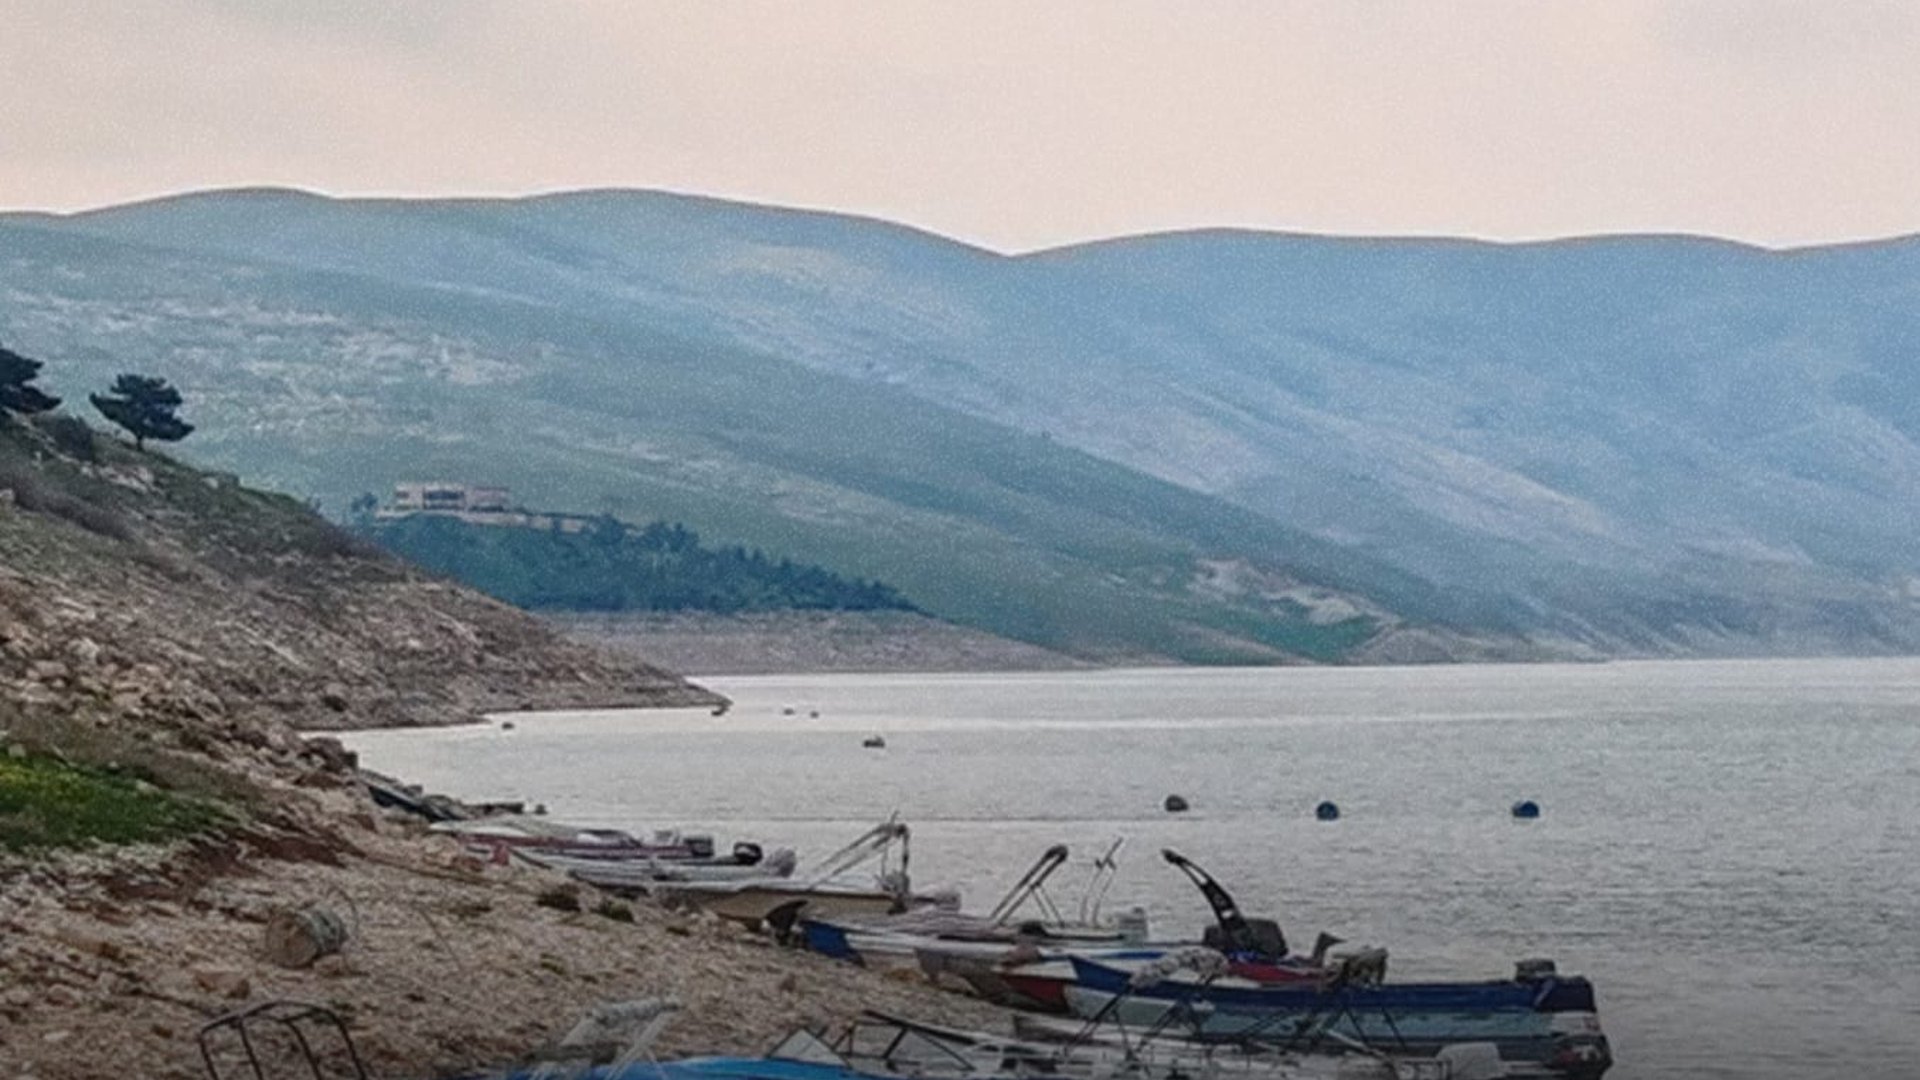 Water reserves in Kurdistans dams exceed five billion cubic meters